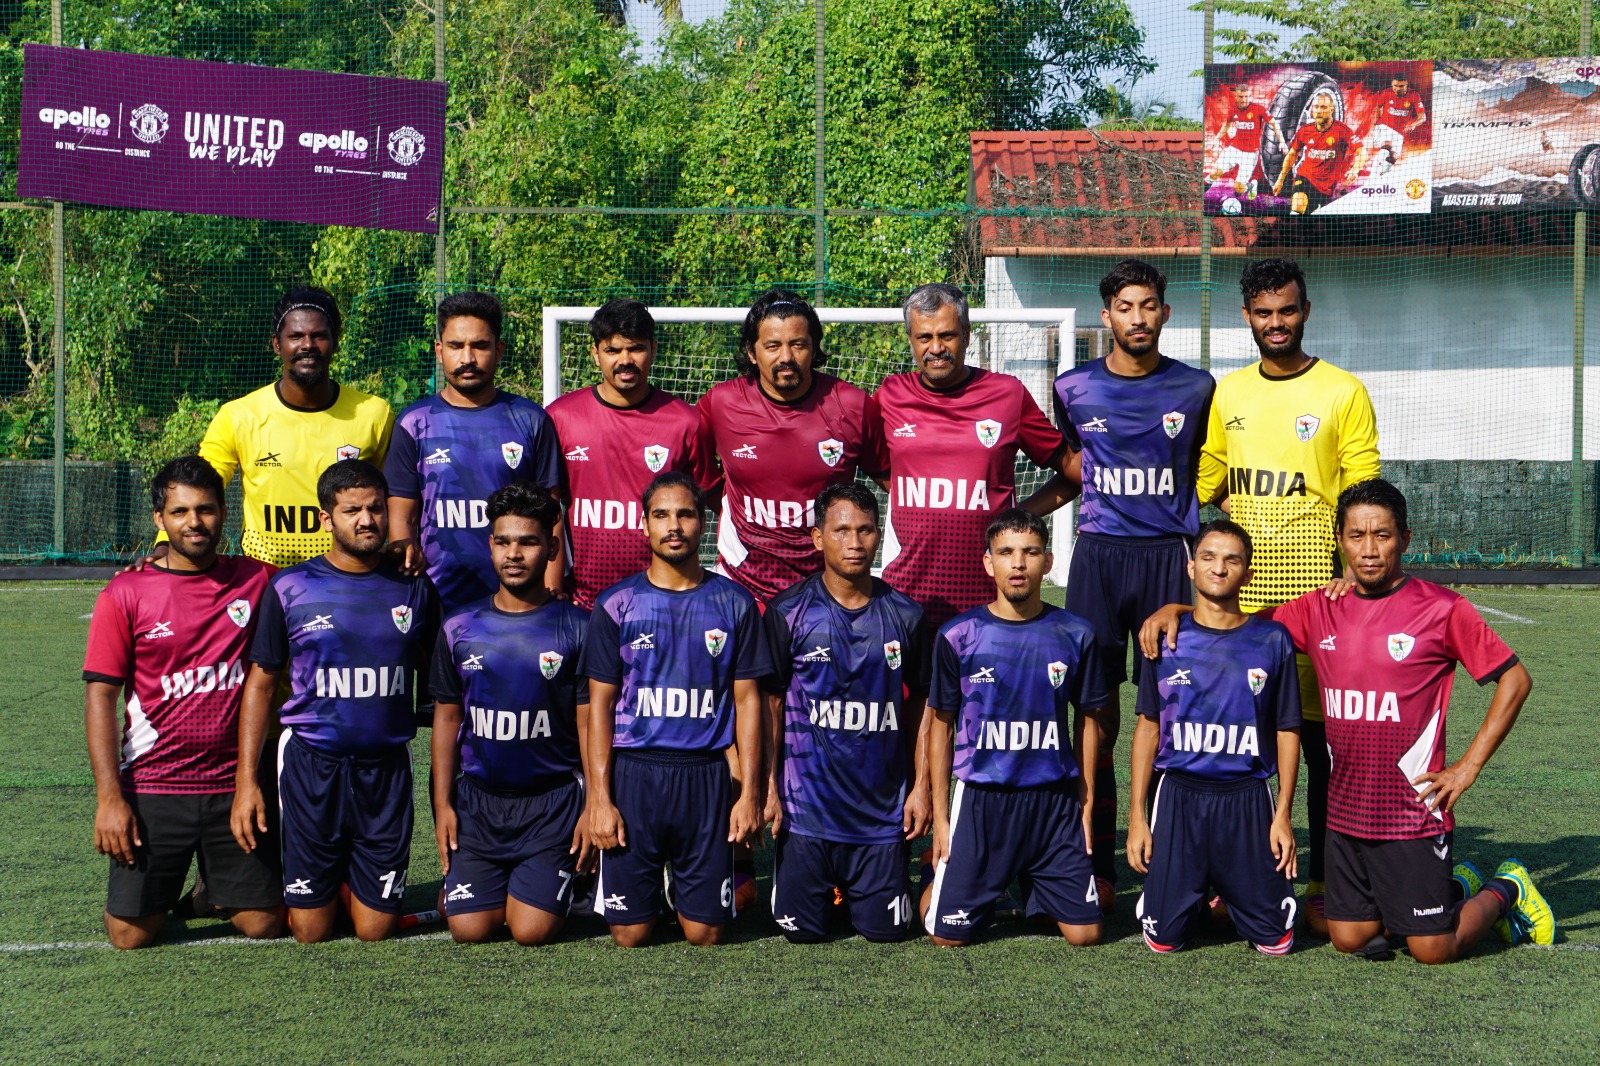 एशियन पैरा गेम्स के लिए इंडियन ब्लाइंड फुटबॉल टीम की घोषणा, उत्तराखंड के चार खिलाड़ी भी शामिल